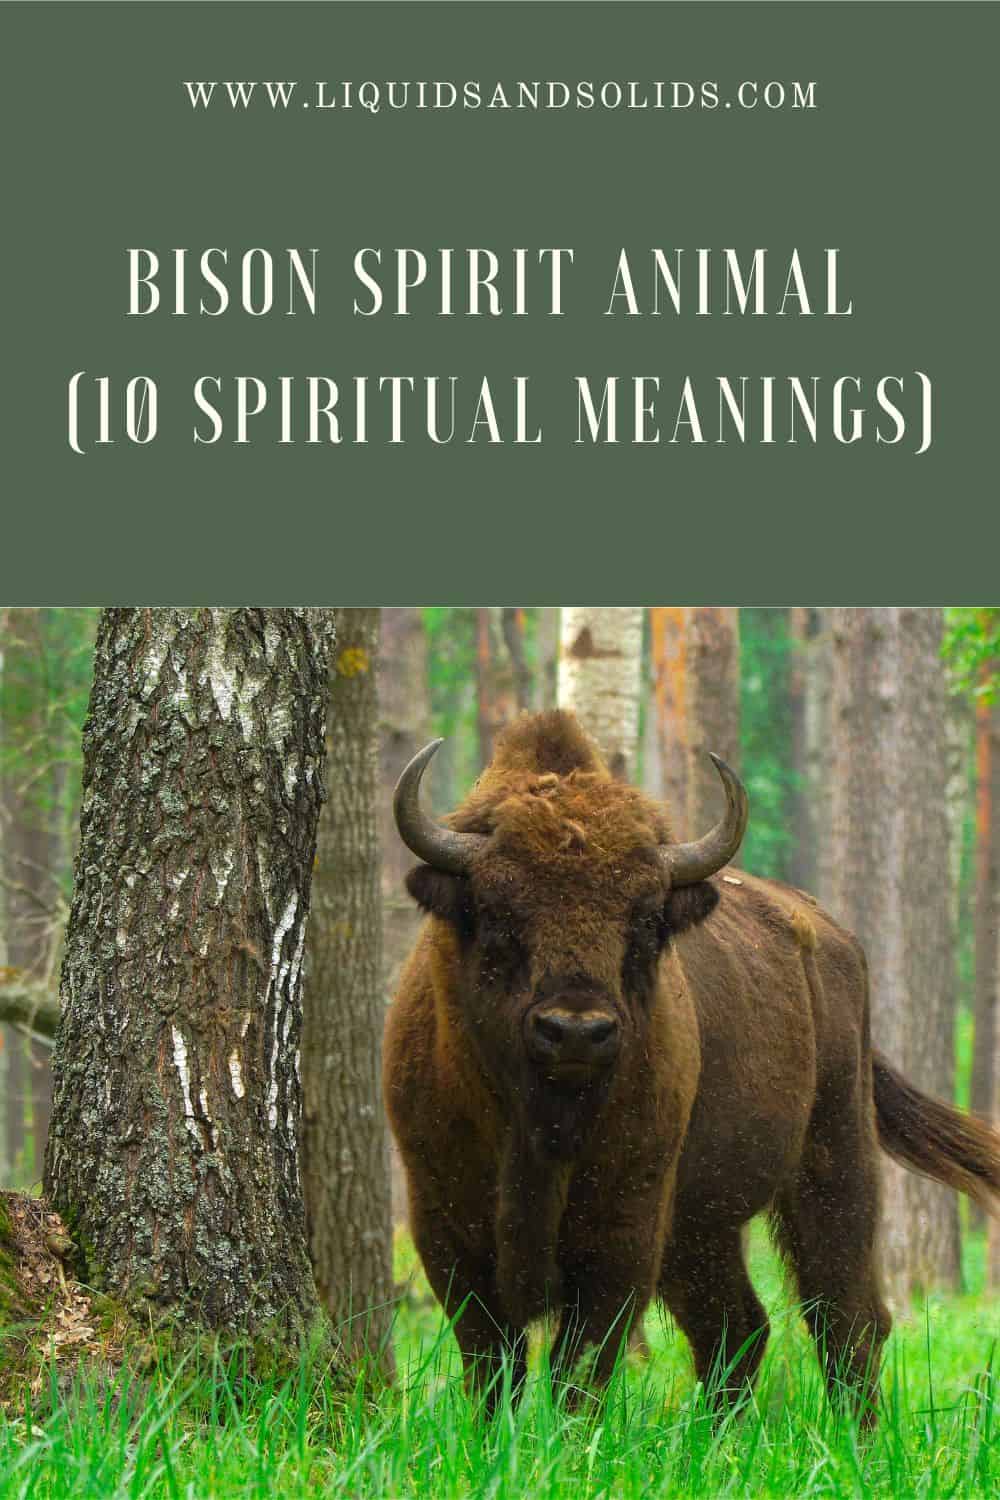 Bison Spirit Animal (10 Spiritual Meanings)